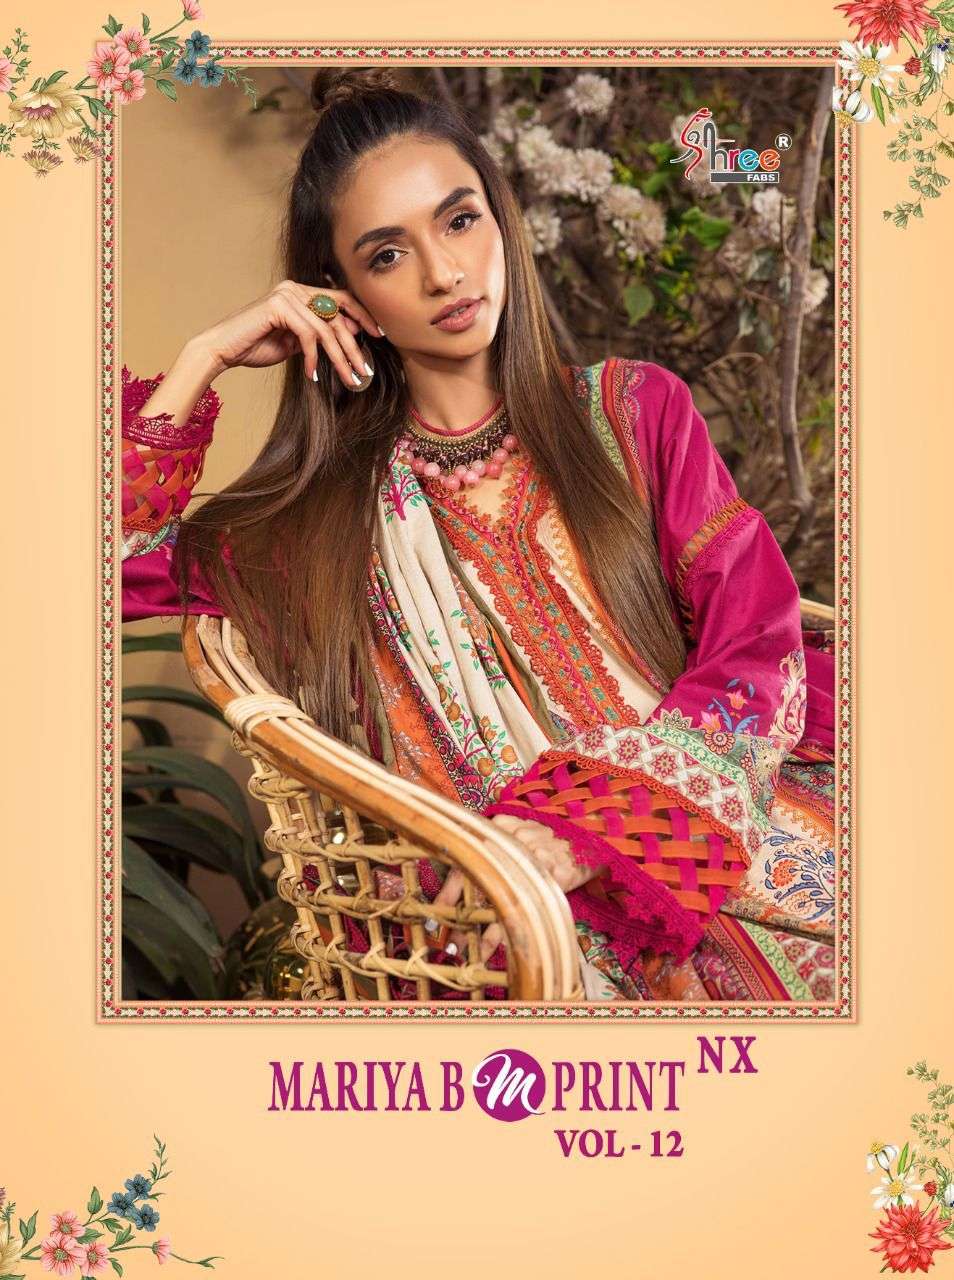 shree fab mariab m print vol-12 nx cotton pakistani salwar kameez